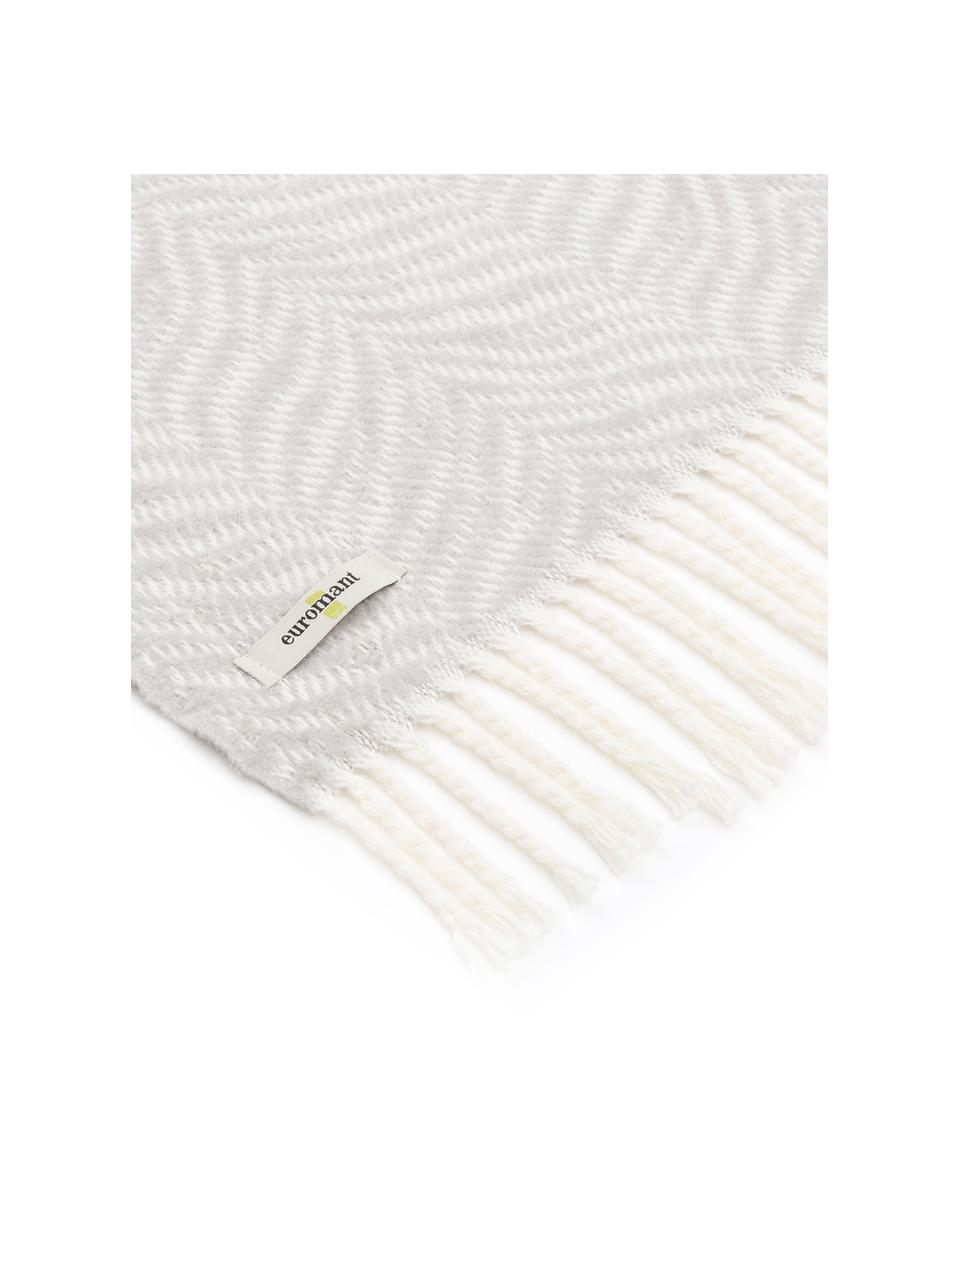 Manta Tigre, 50% algodón, 50% acrílico, Gris claro, blanco crudo, An 140 x L 180 cm